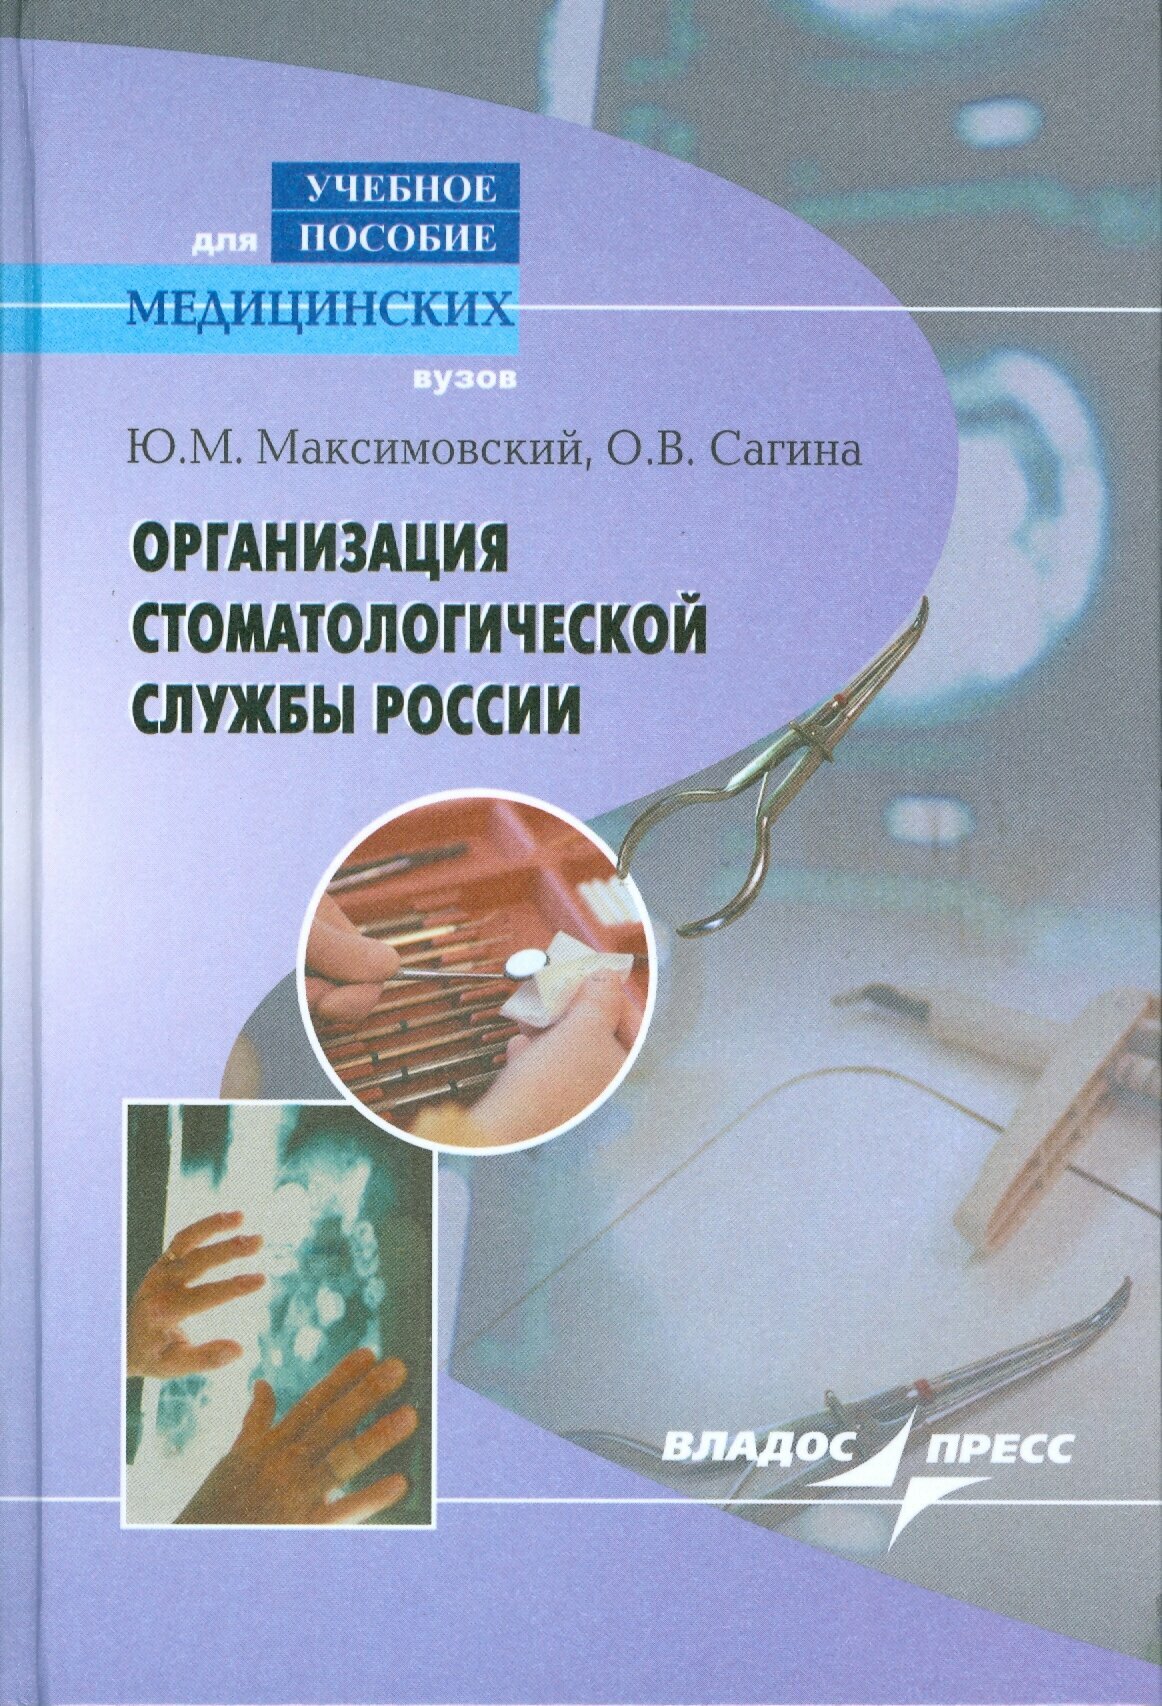 Организация стоматологической службы России - фото №3